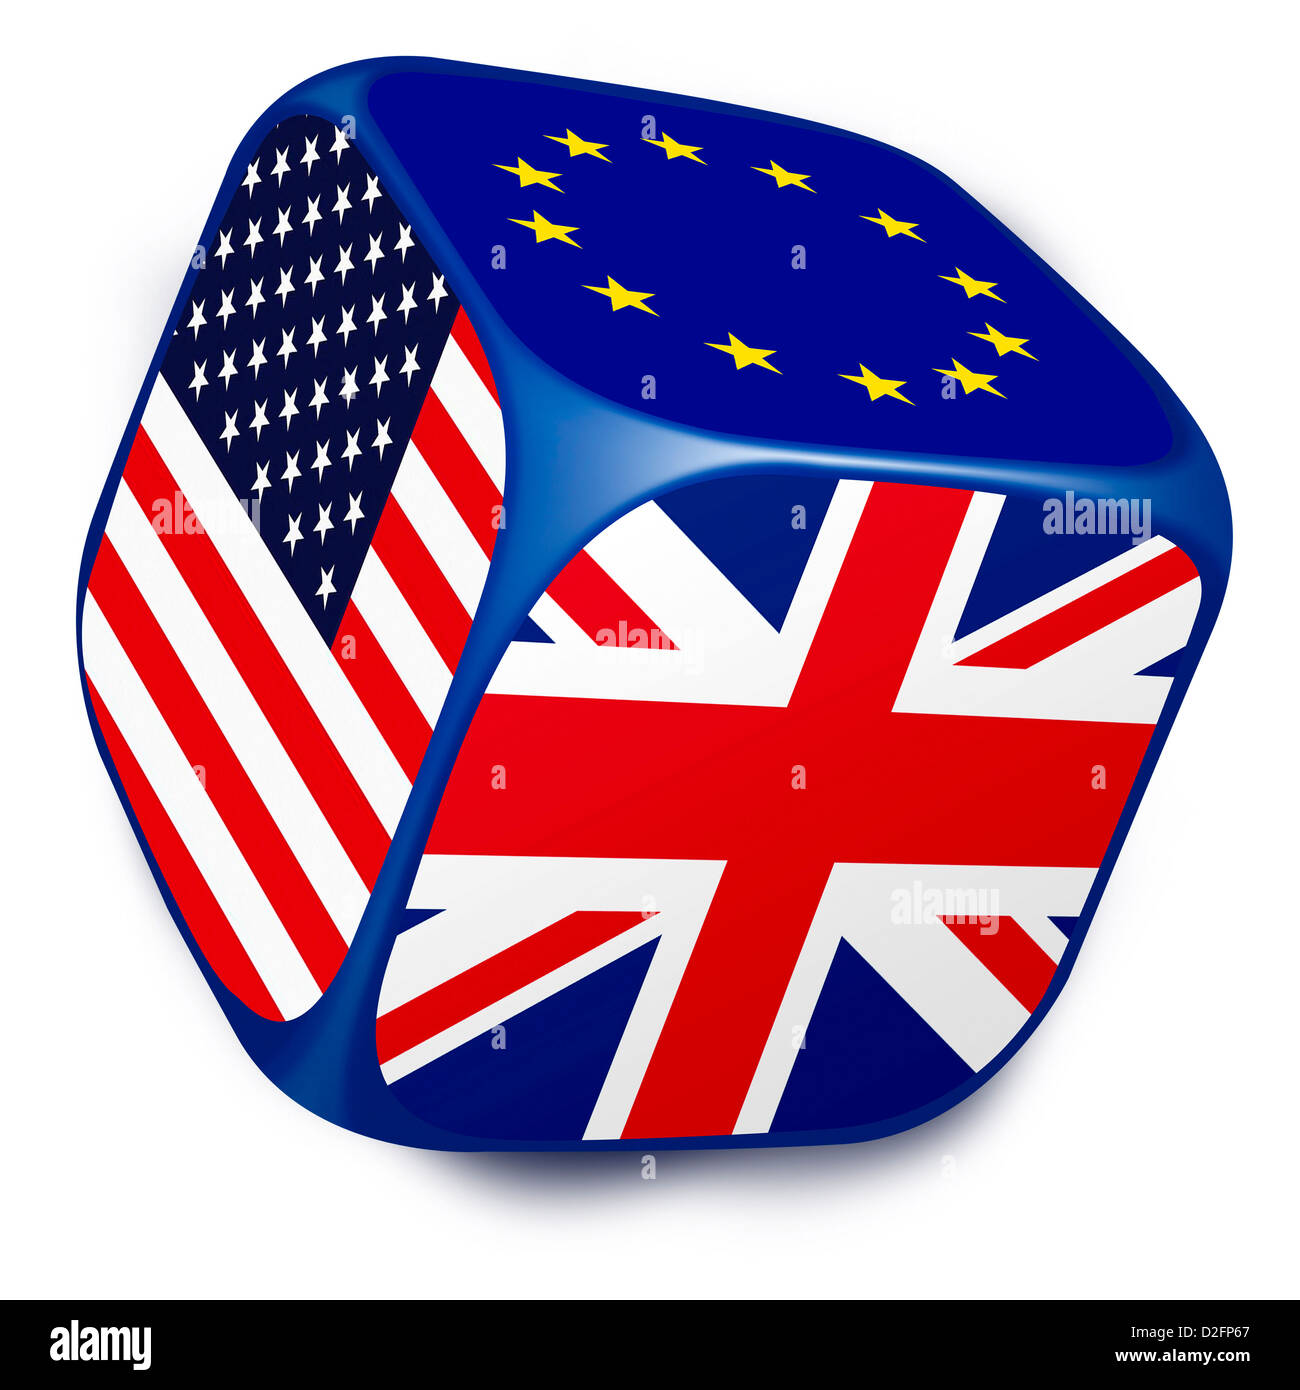 Dadi con le bandiere della Unione Europea, Regno Unito e Stati Uniti d'America su ciascuno dei suoi lati - i paesi della NATO Foto Stock